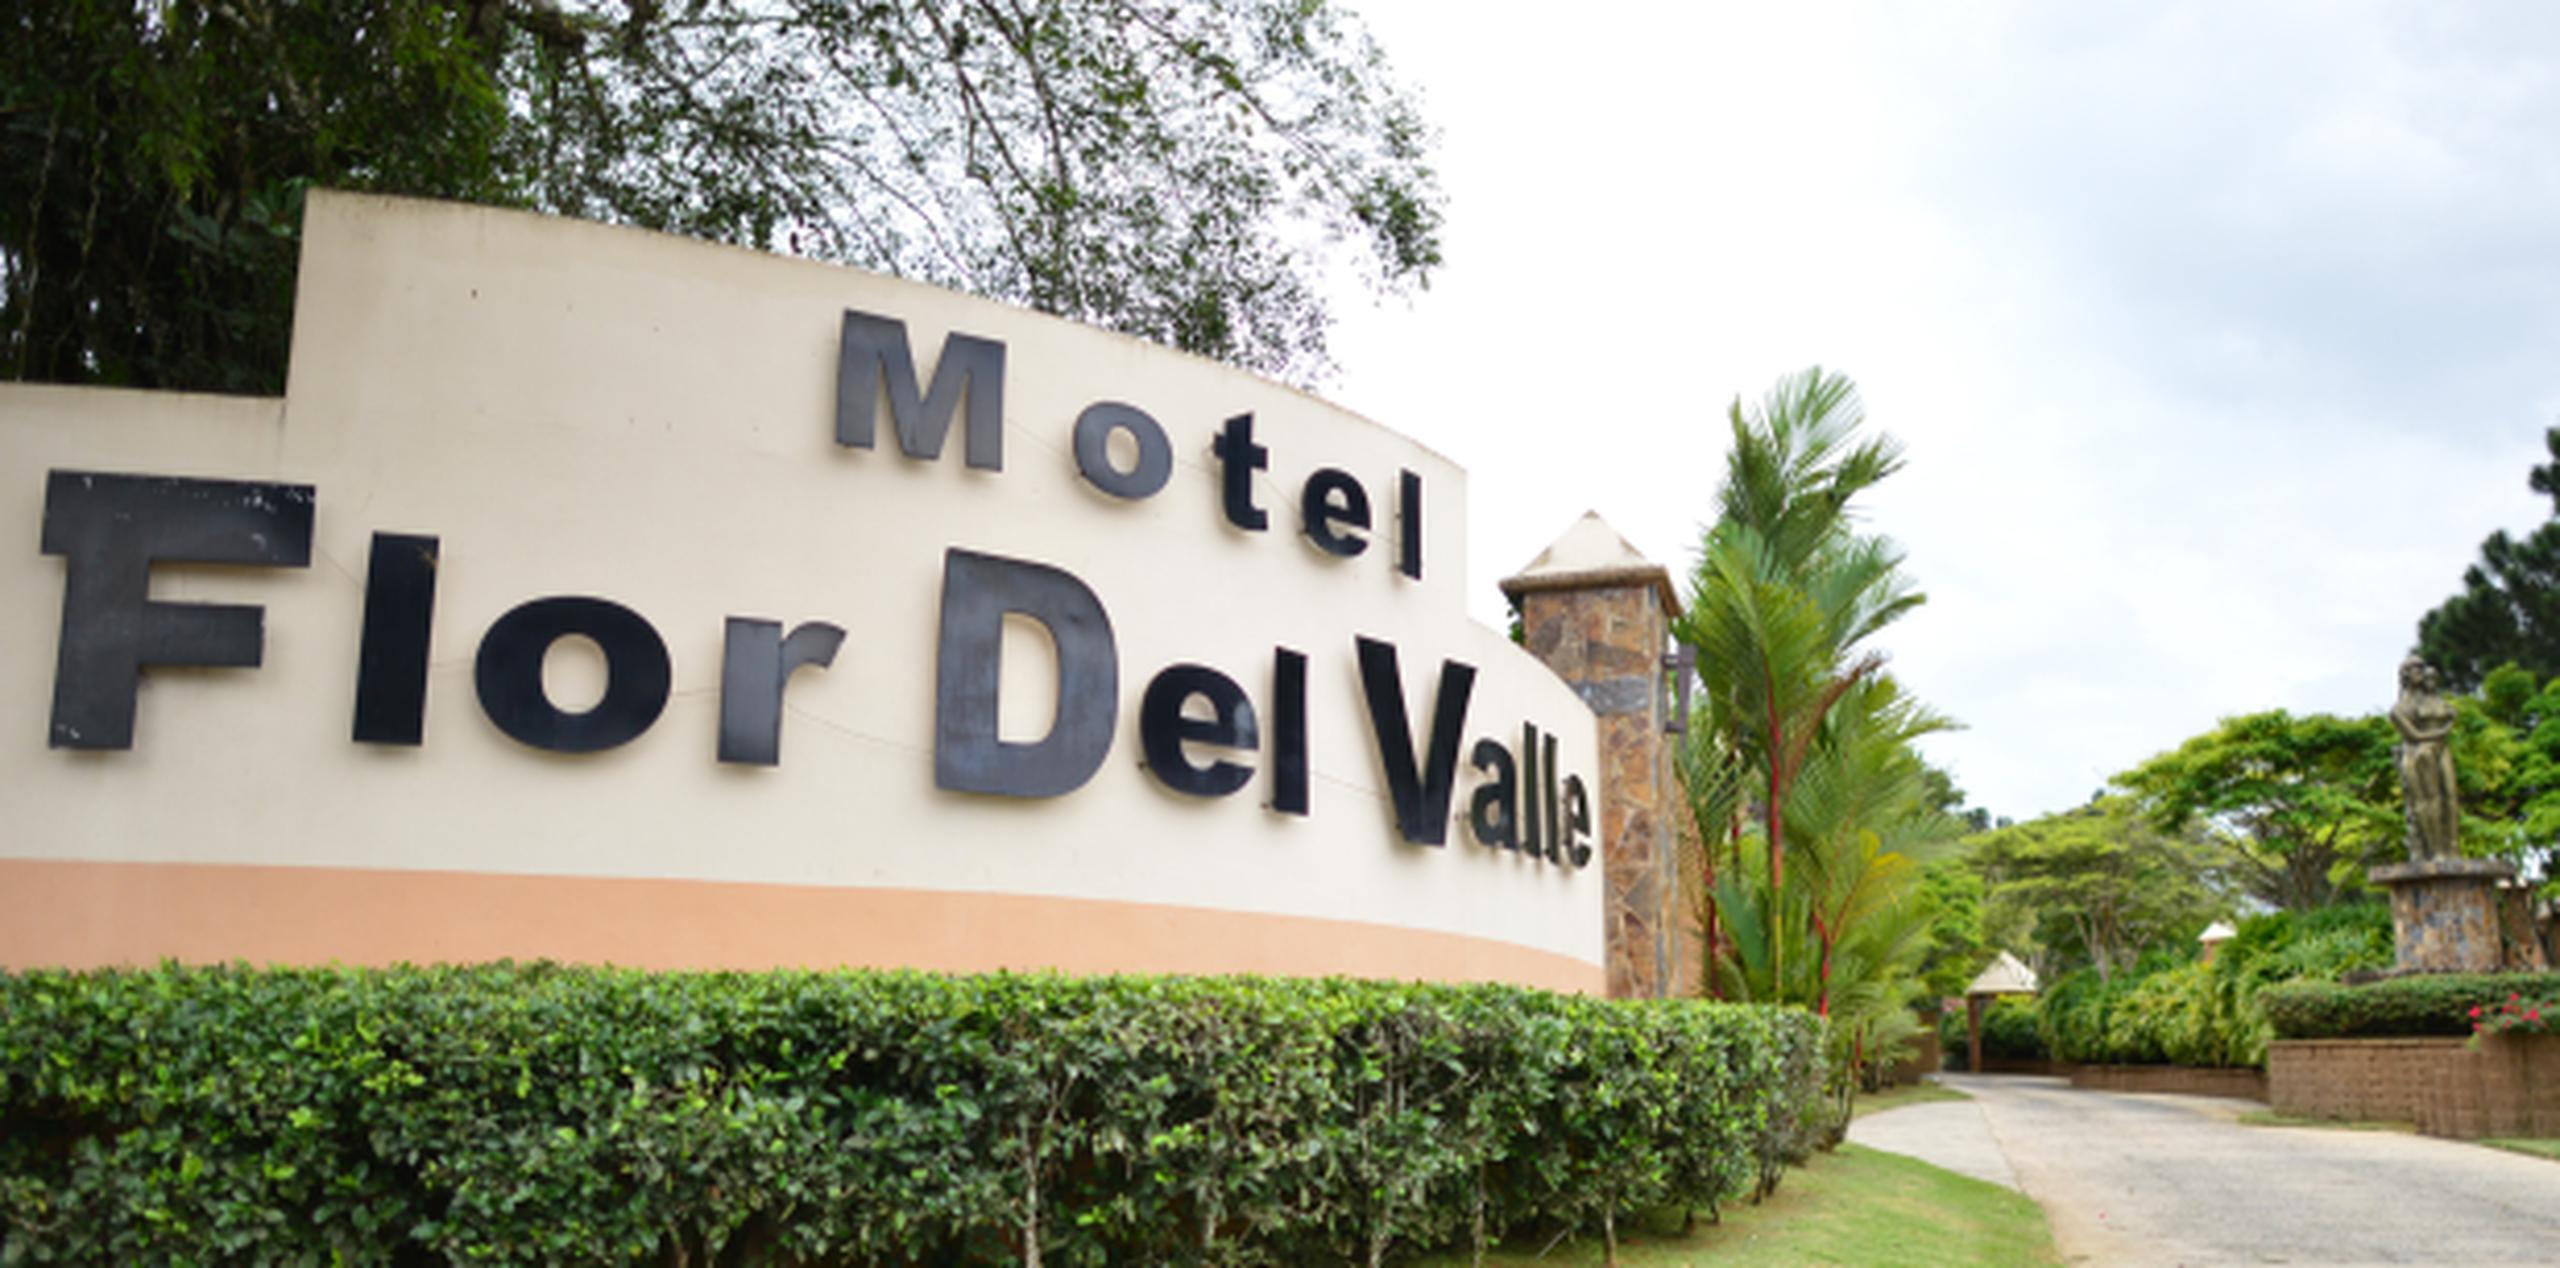 En el motel Flor Del Valle se ocuparon casi todas las 90 habitaciones. (Archivo)